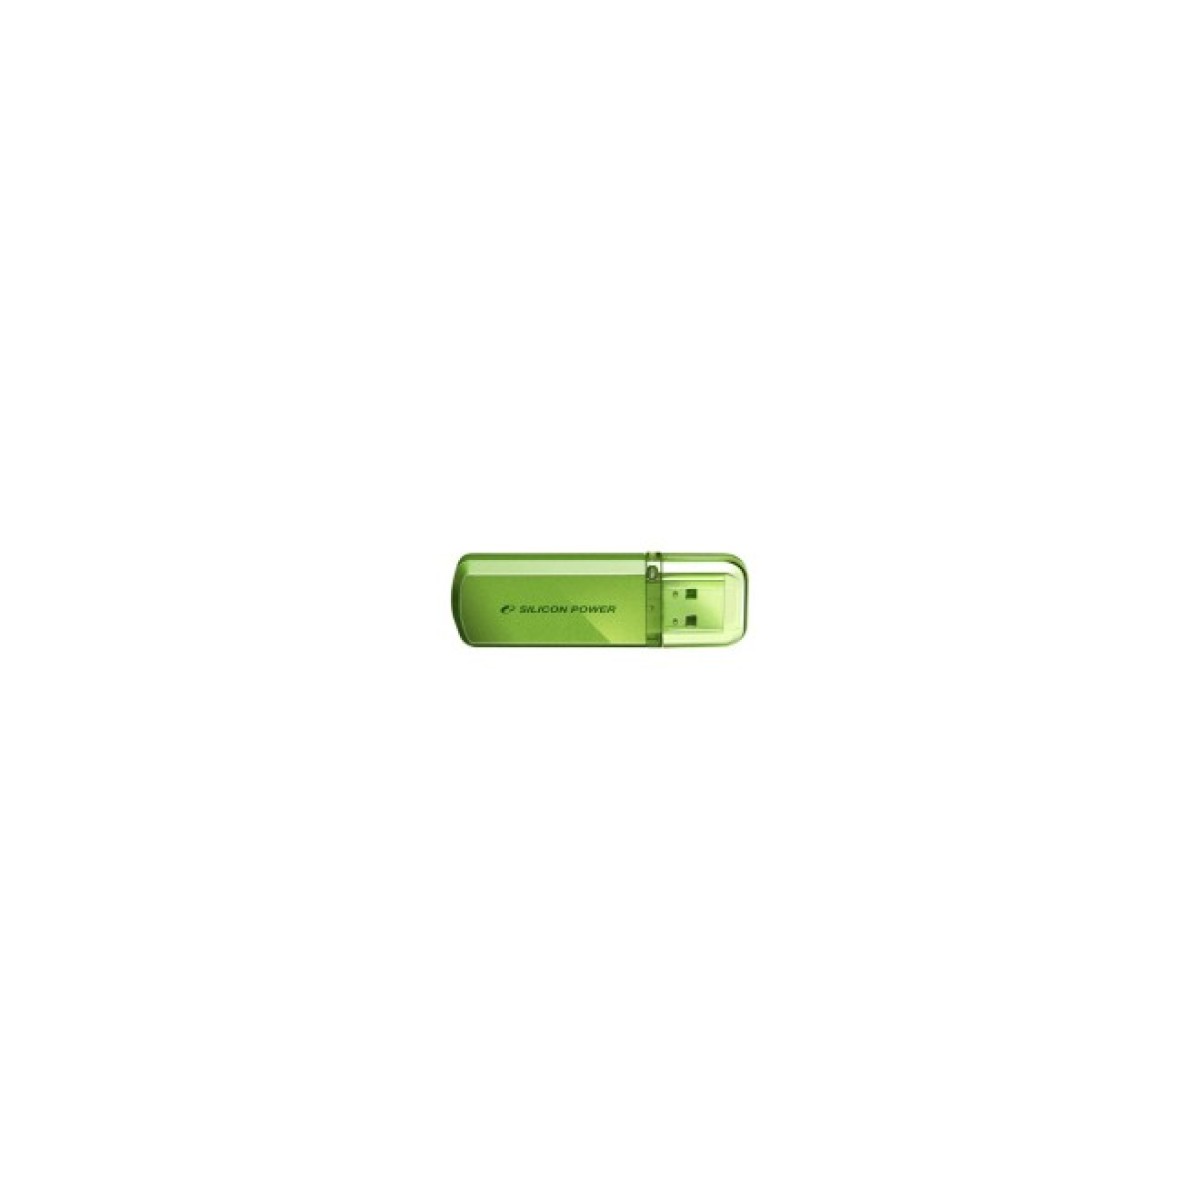 USB флеш накопитель Silicon Power 16Gb Helios 101 green (SP016GBUF2101V1N) 256_256.jpg